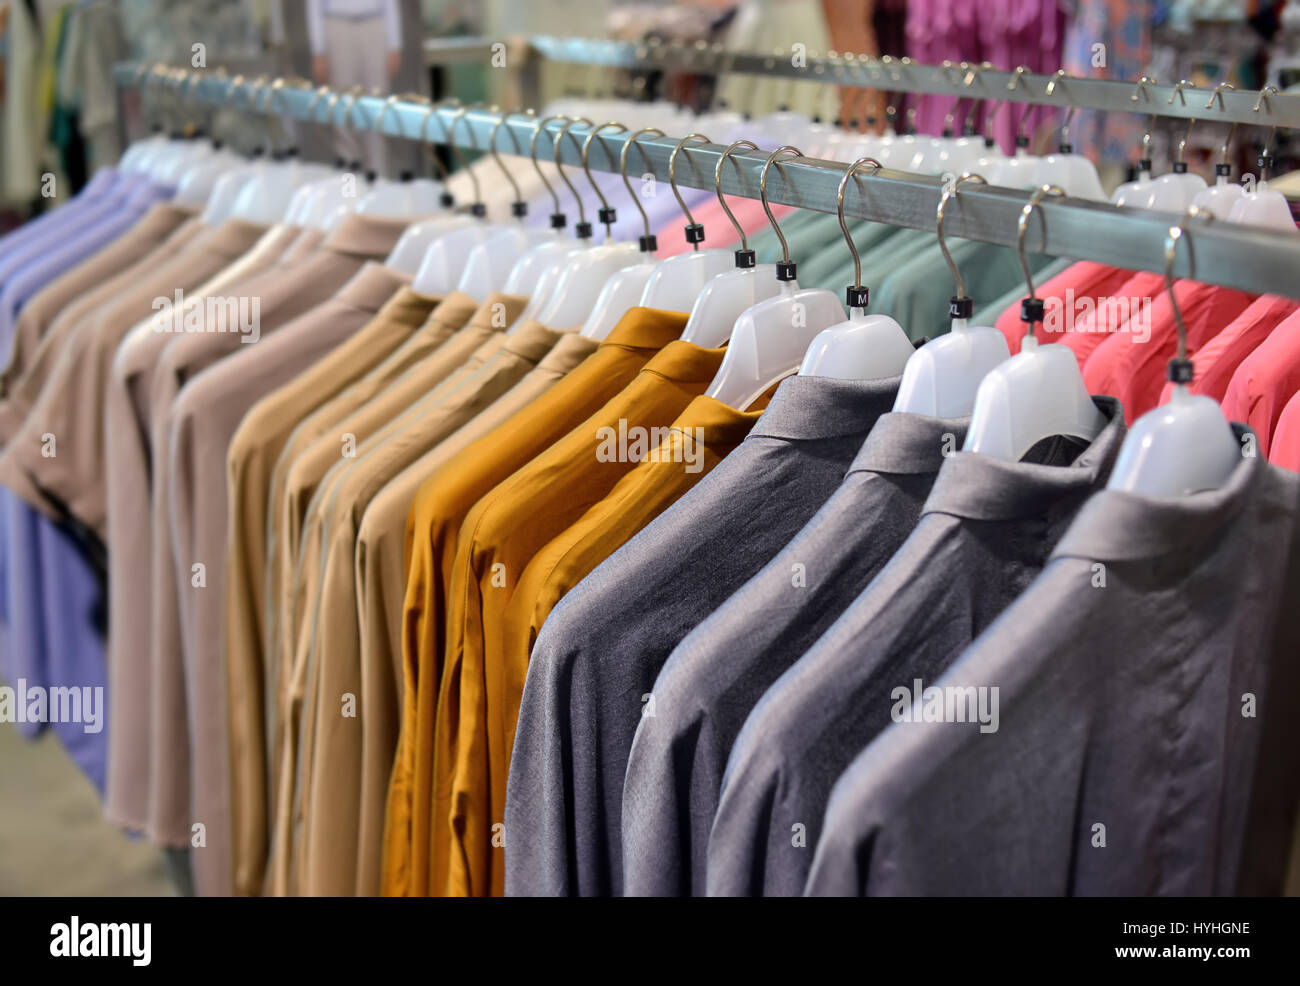 Kleidersammlung in Kleiderbügel für Verkauf Foto in der niedrigen  Innenbeleuchtung Stockfotografie - Alamy